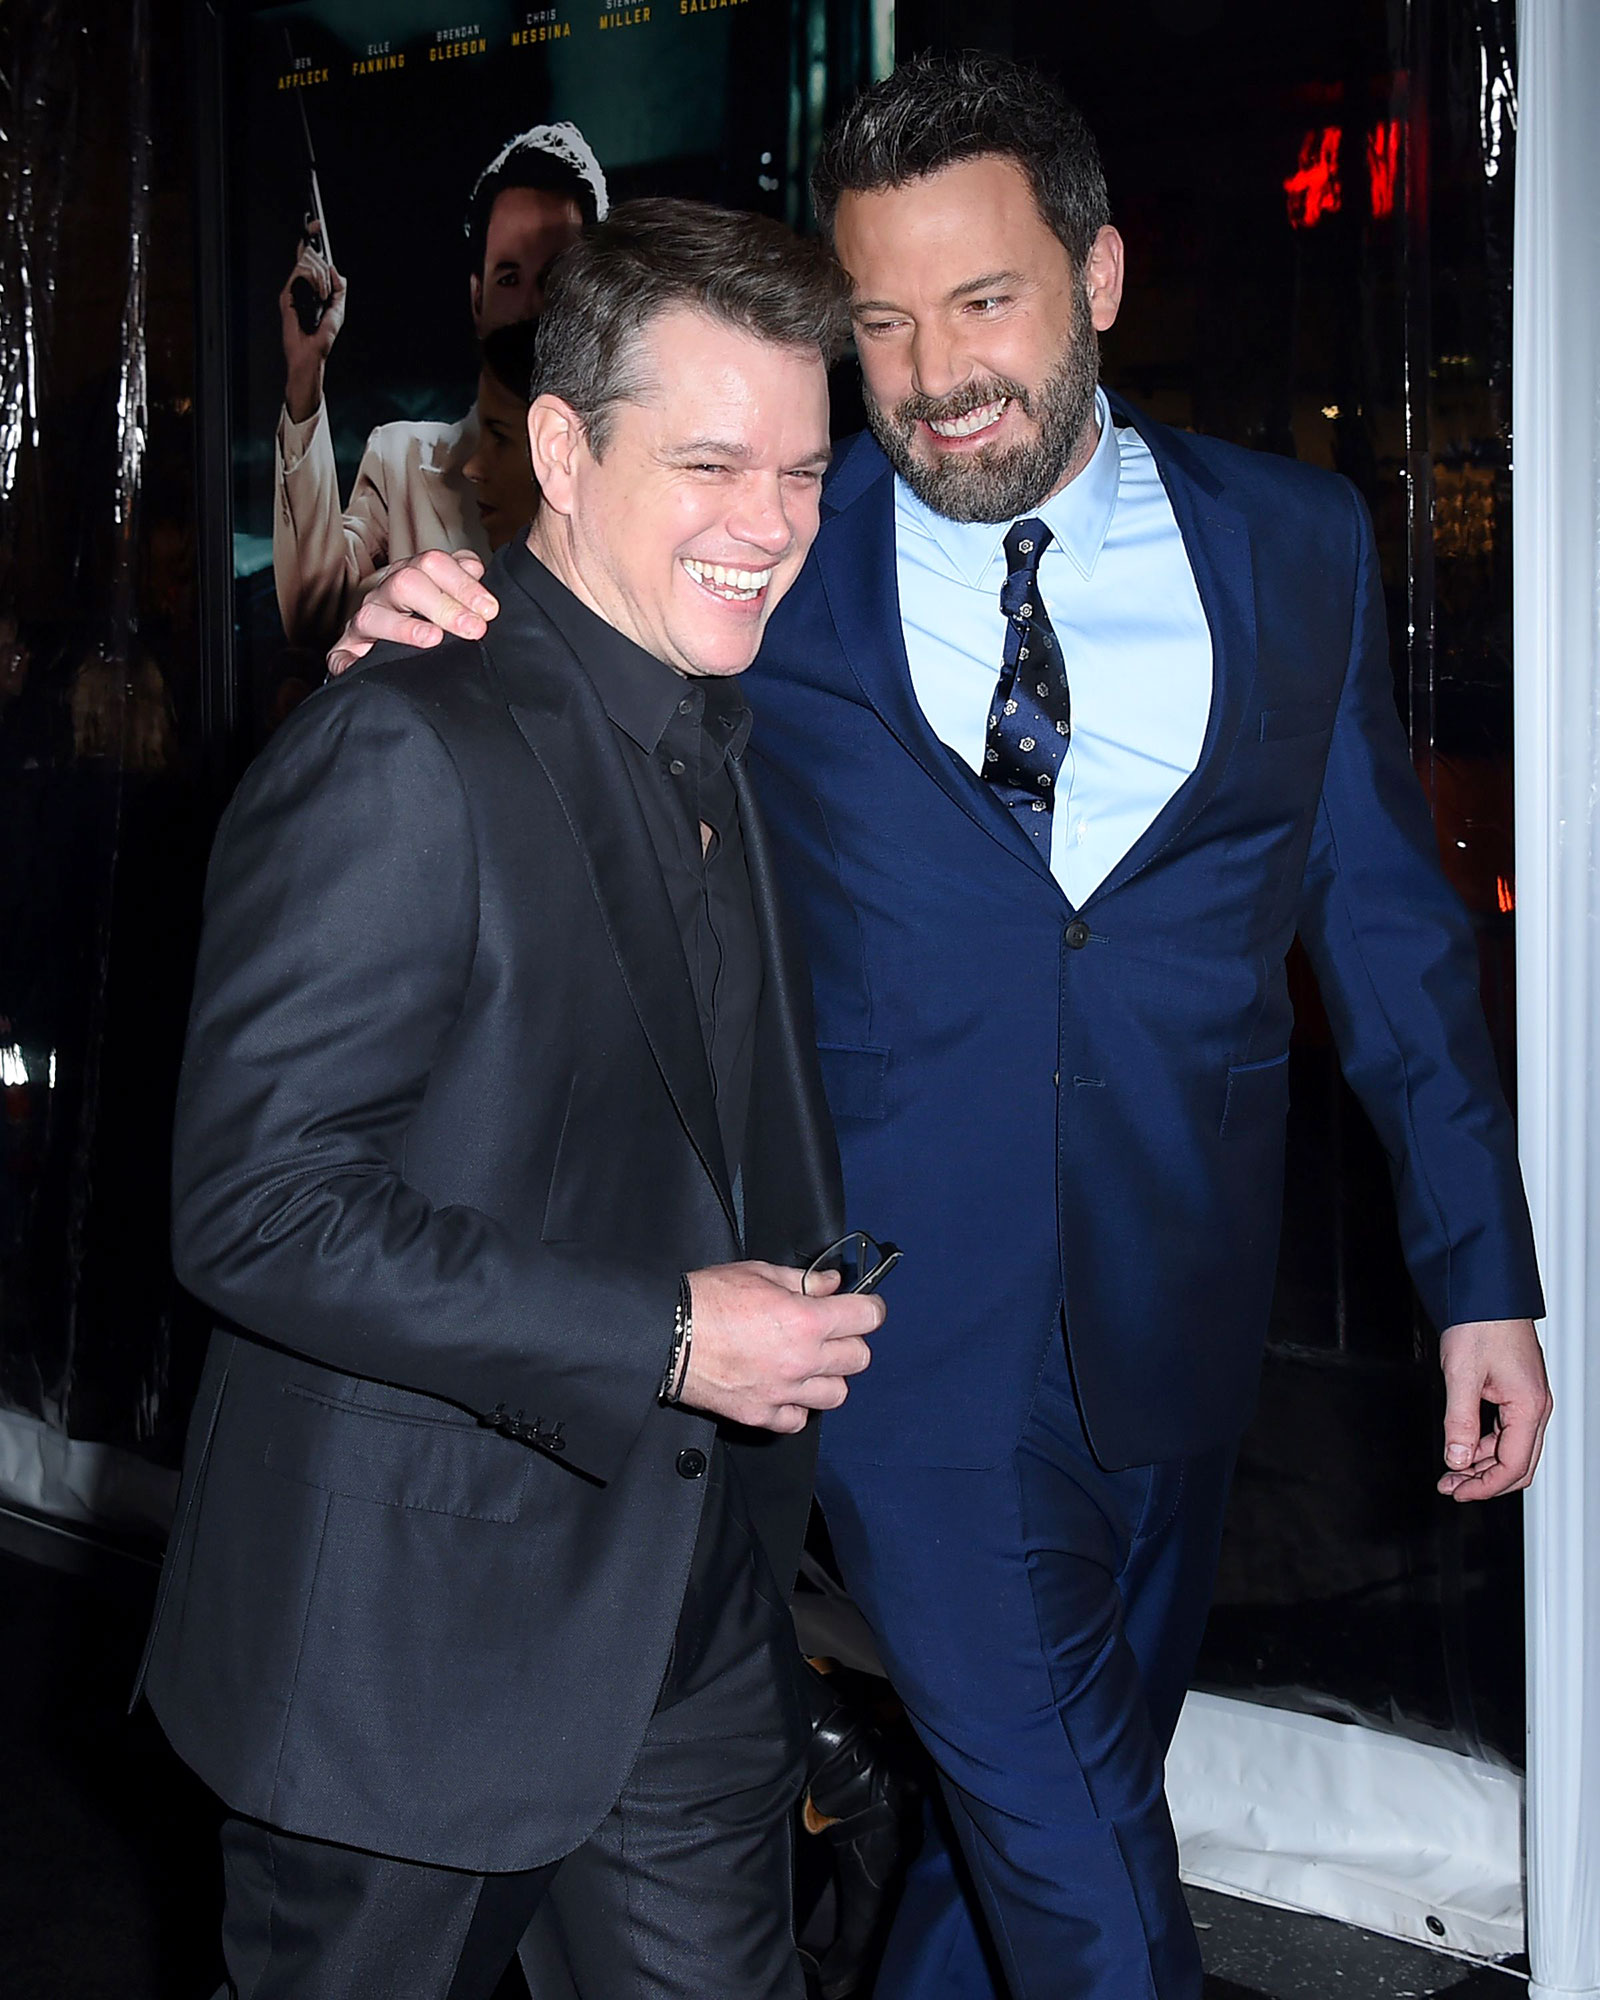 Matt Damon and Ben Affleck Celebrity BFFs